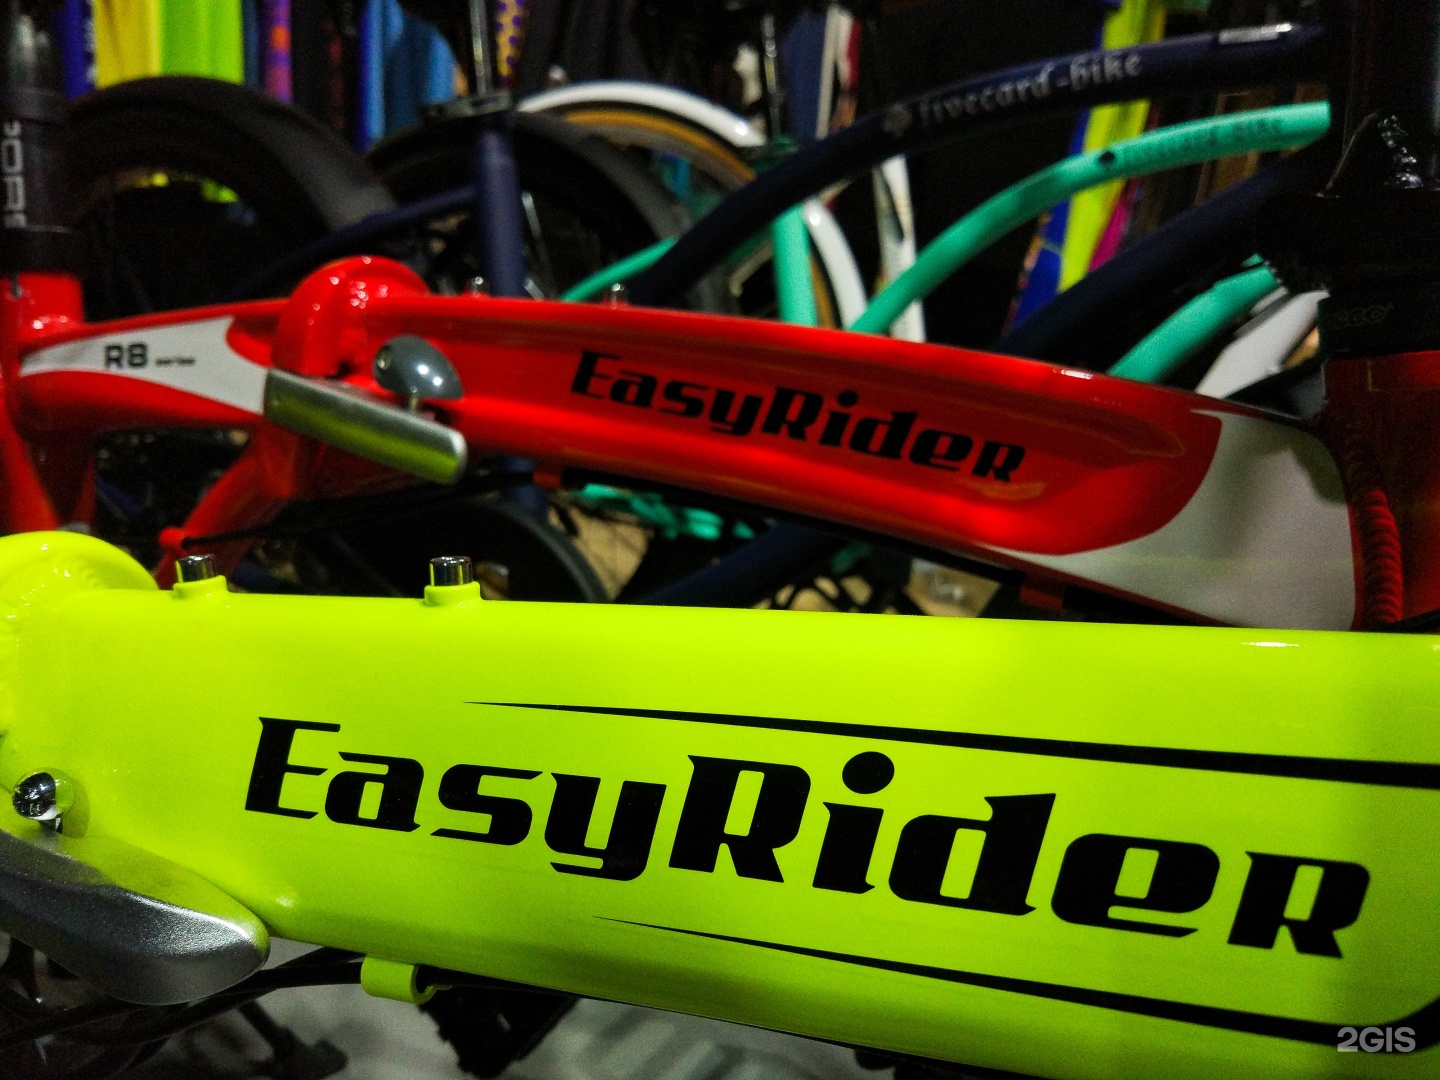 Iride shop Владивосток. Сам себе велосипед Владивосток. Купить велосипед во владивостоке